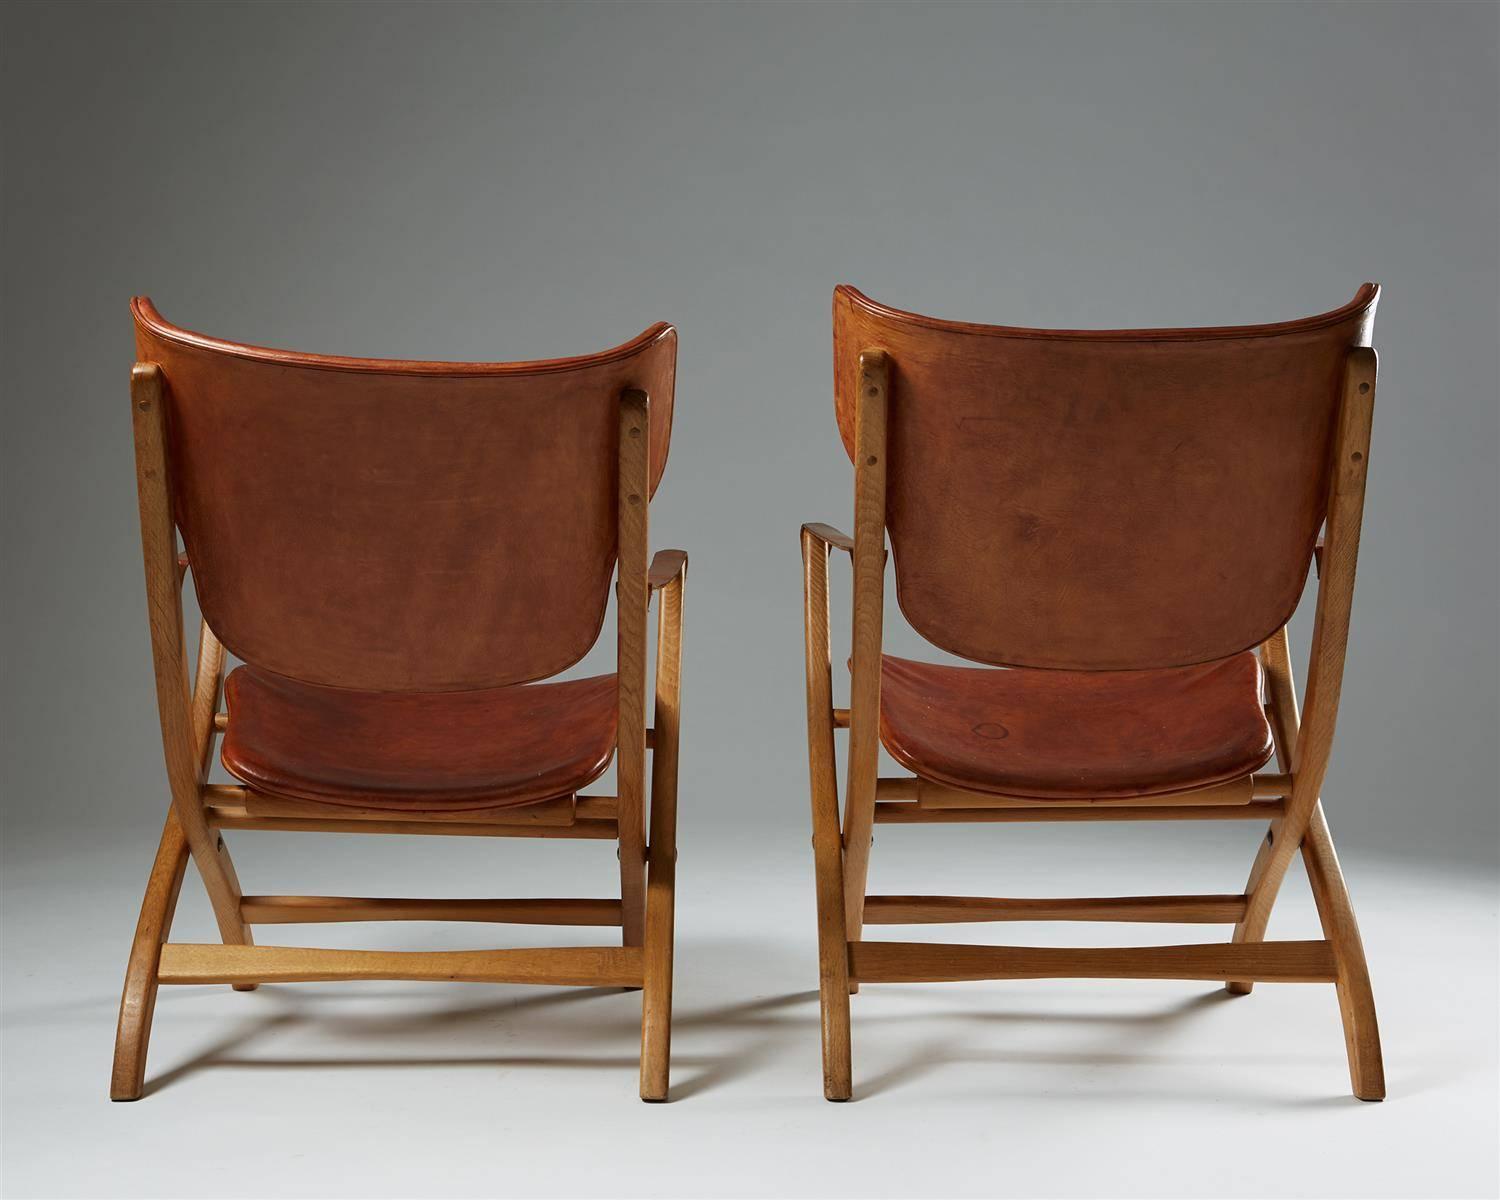 Mid-20th Century Folding Armchair “Egyptian Chair” Designed by Poul Hundevad, Denmark, 1950s